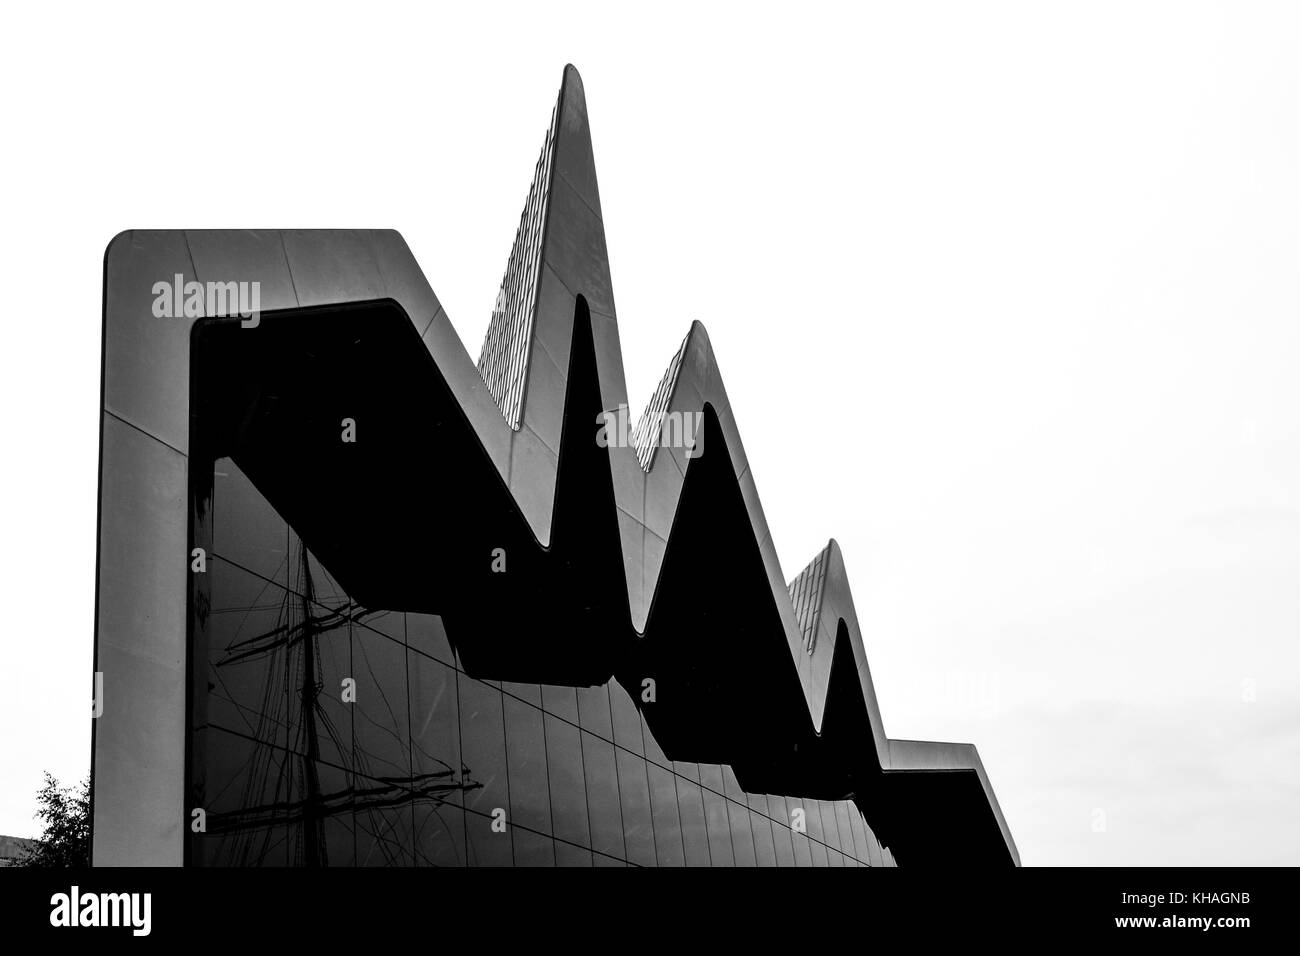 Risse in der Fassade der Riverside Museum von Zaha Hadid Architects entworfen. Entlang dem Fluss Clyde in Glasgow, Schottland. Stockfoto